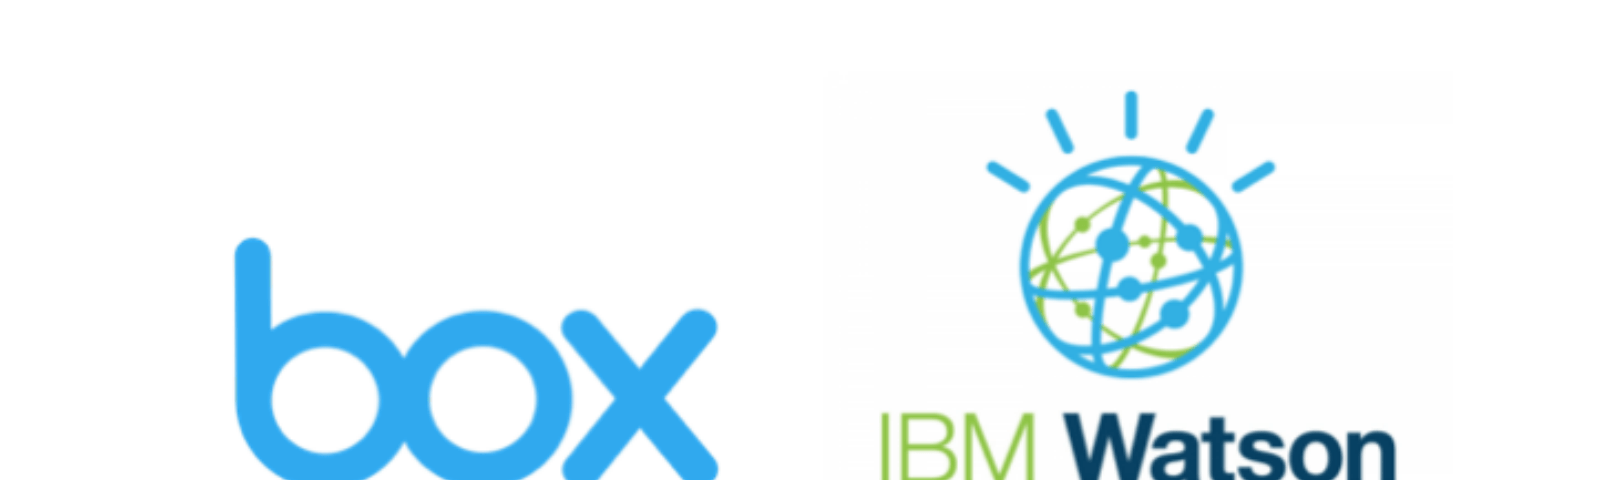 IBM Watson Logo - Ibm Watson